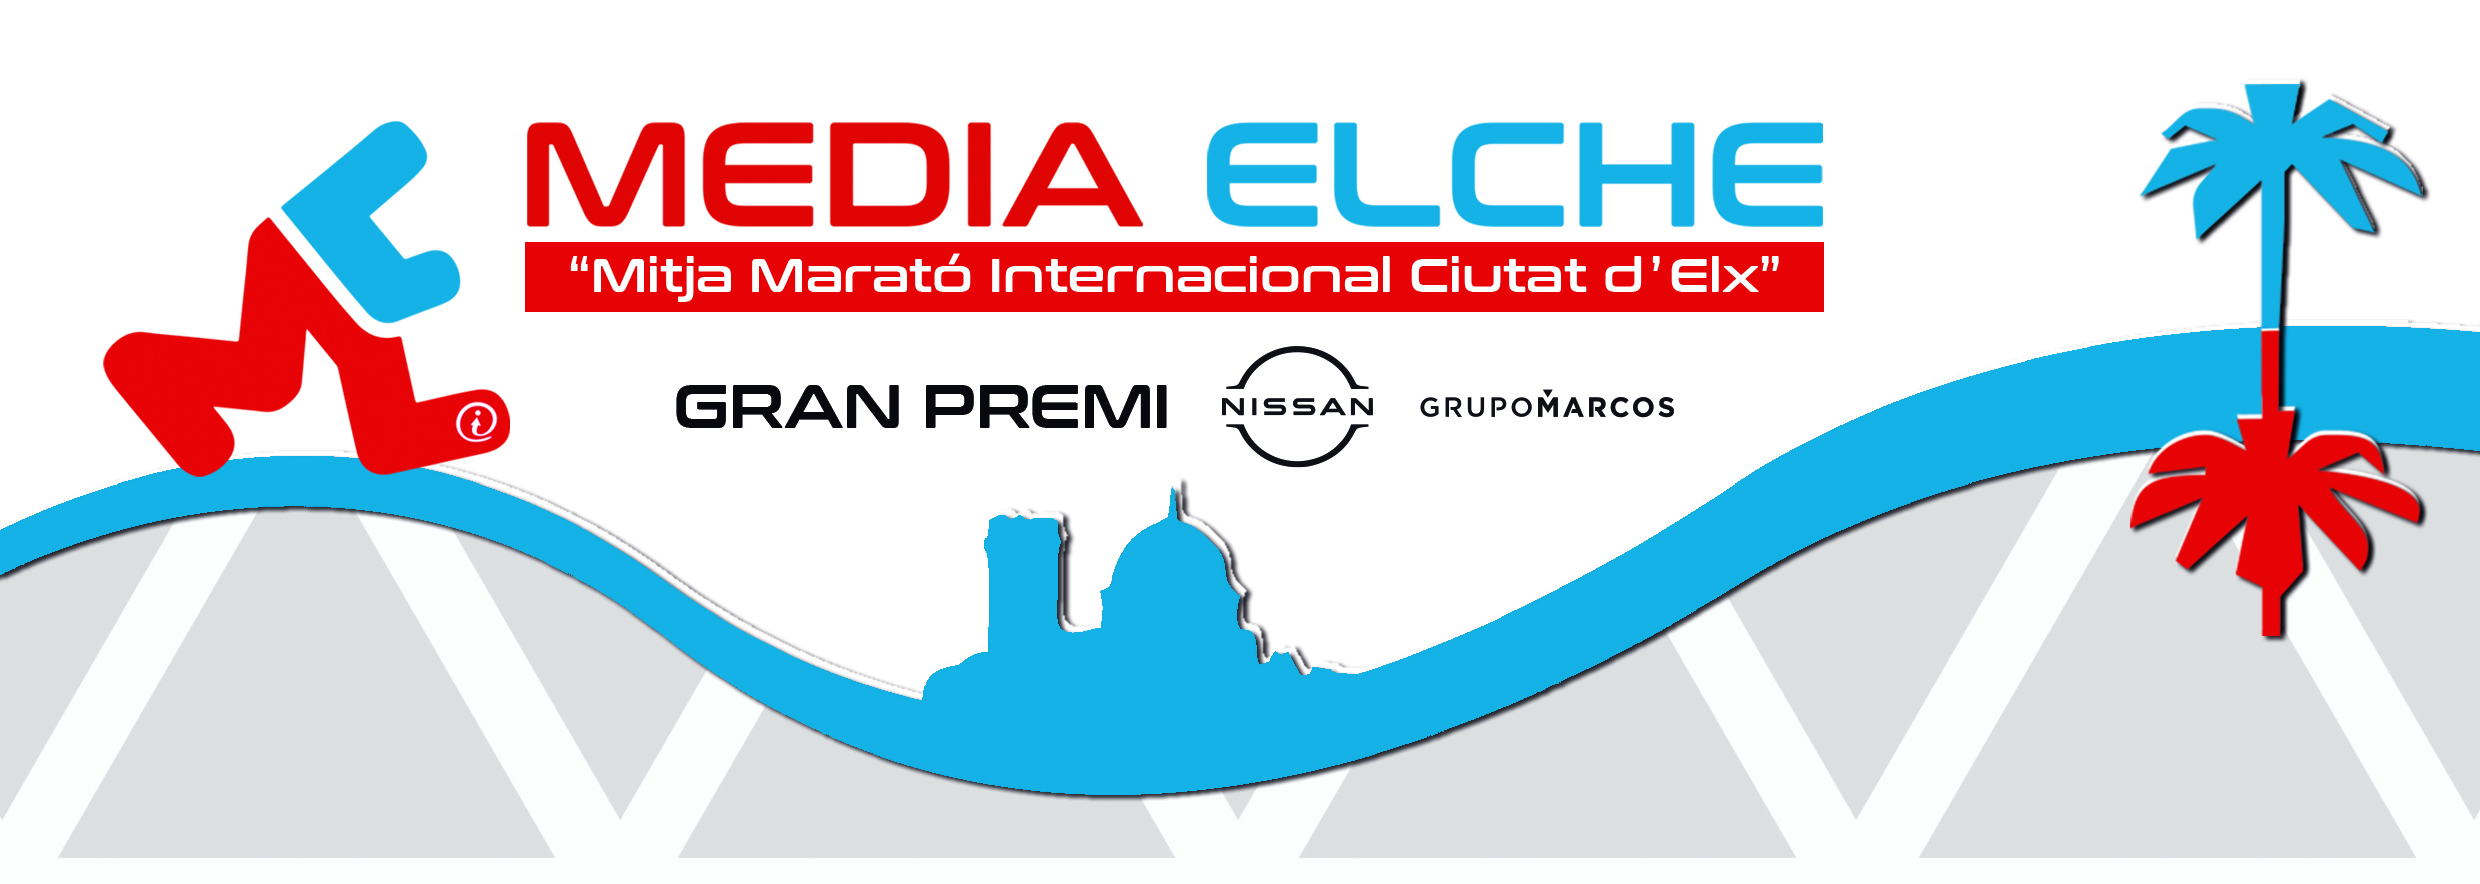 Media Maratón Internacional Elche